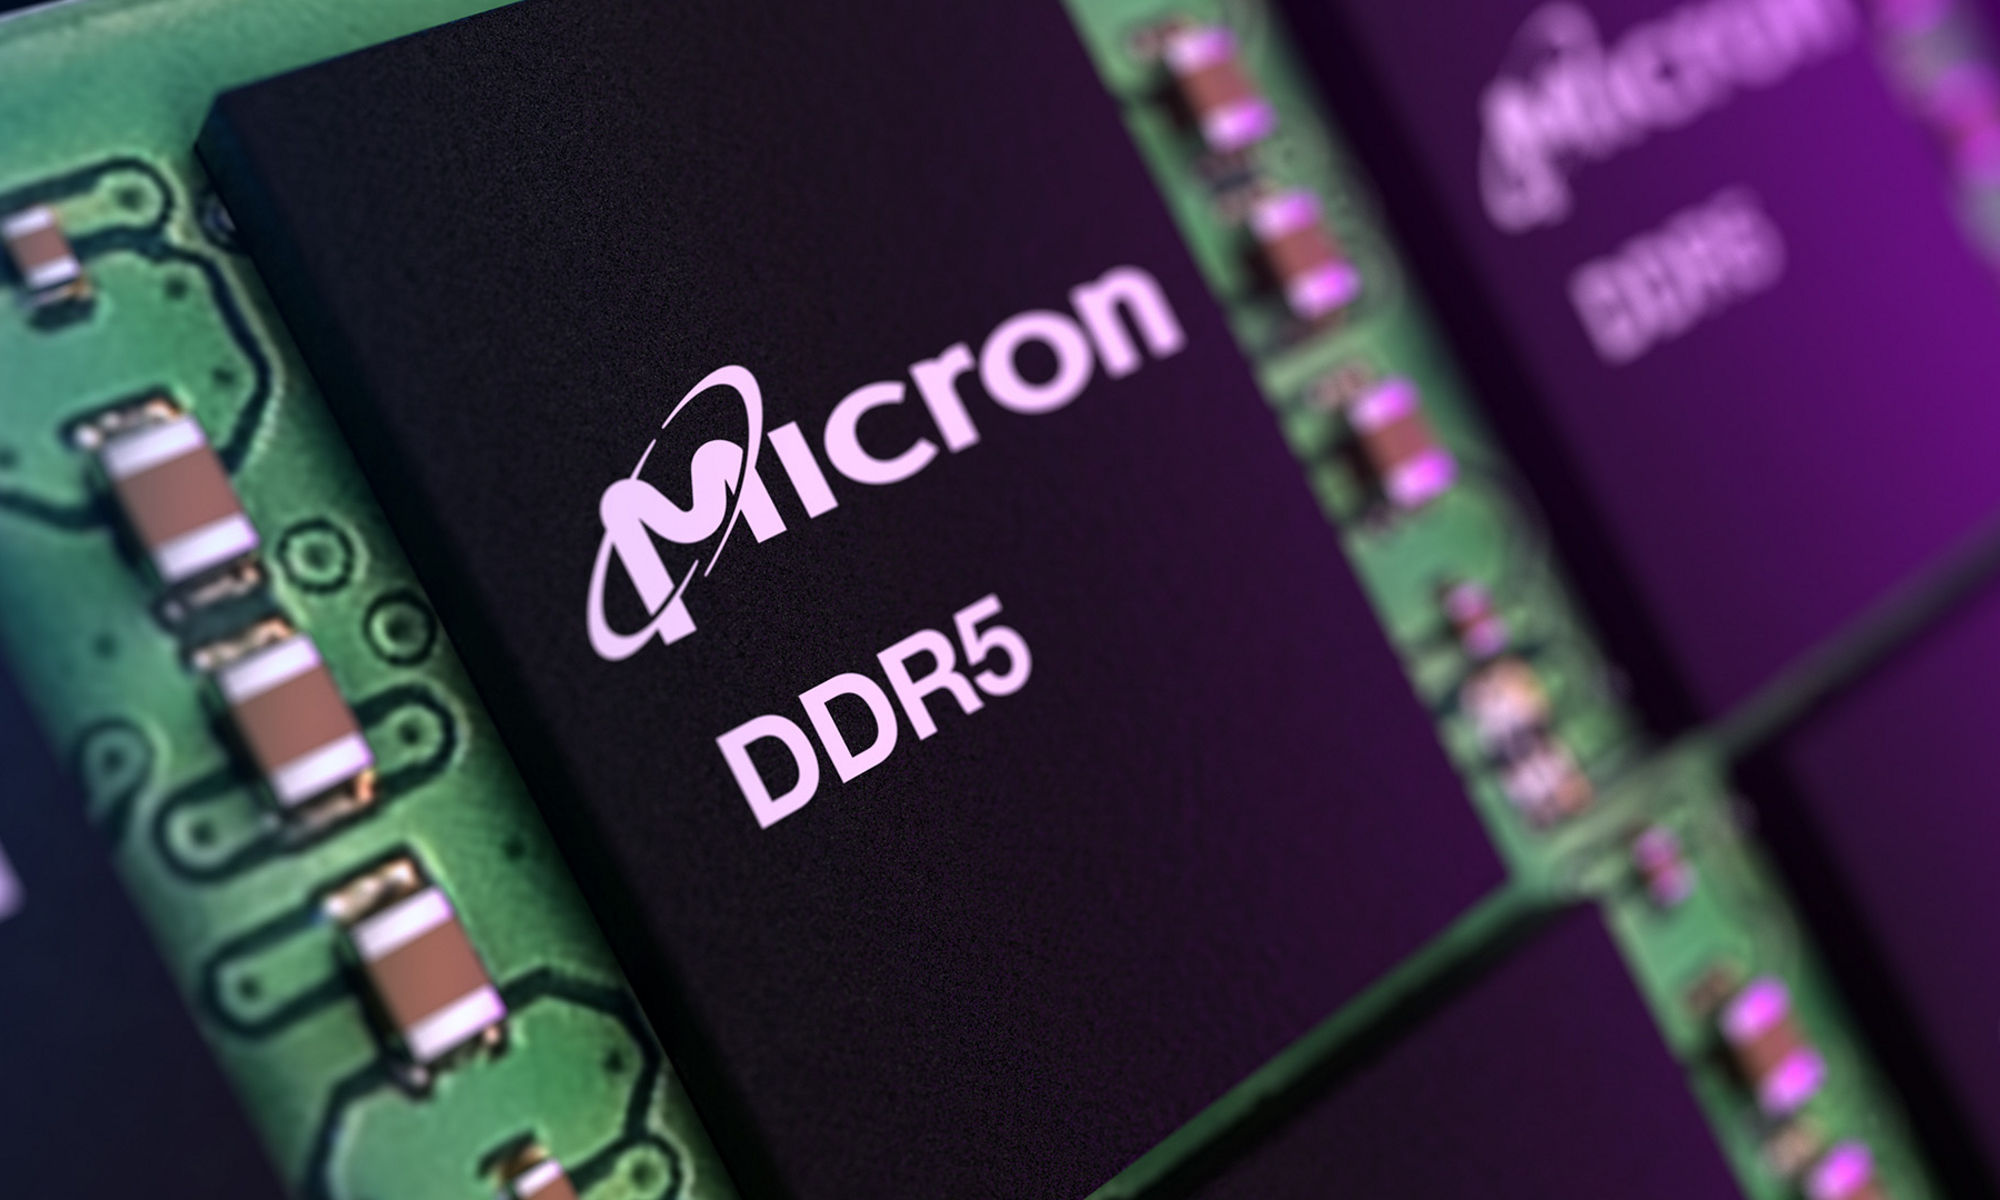 美光 DDR5 器件